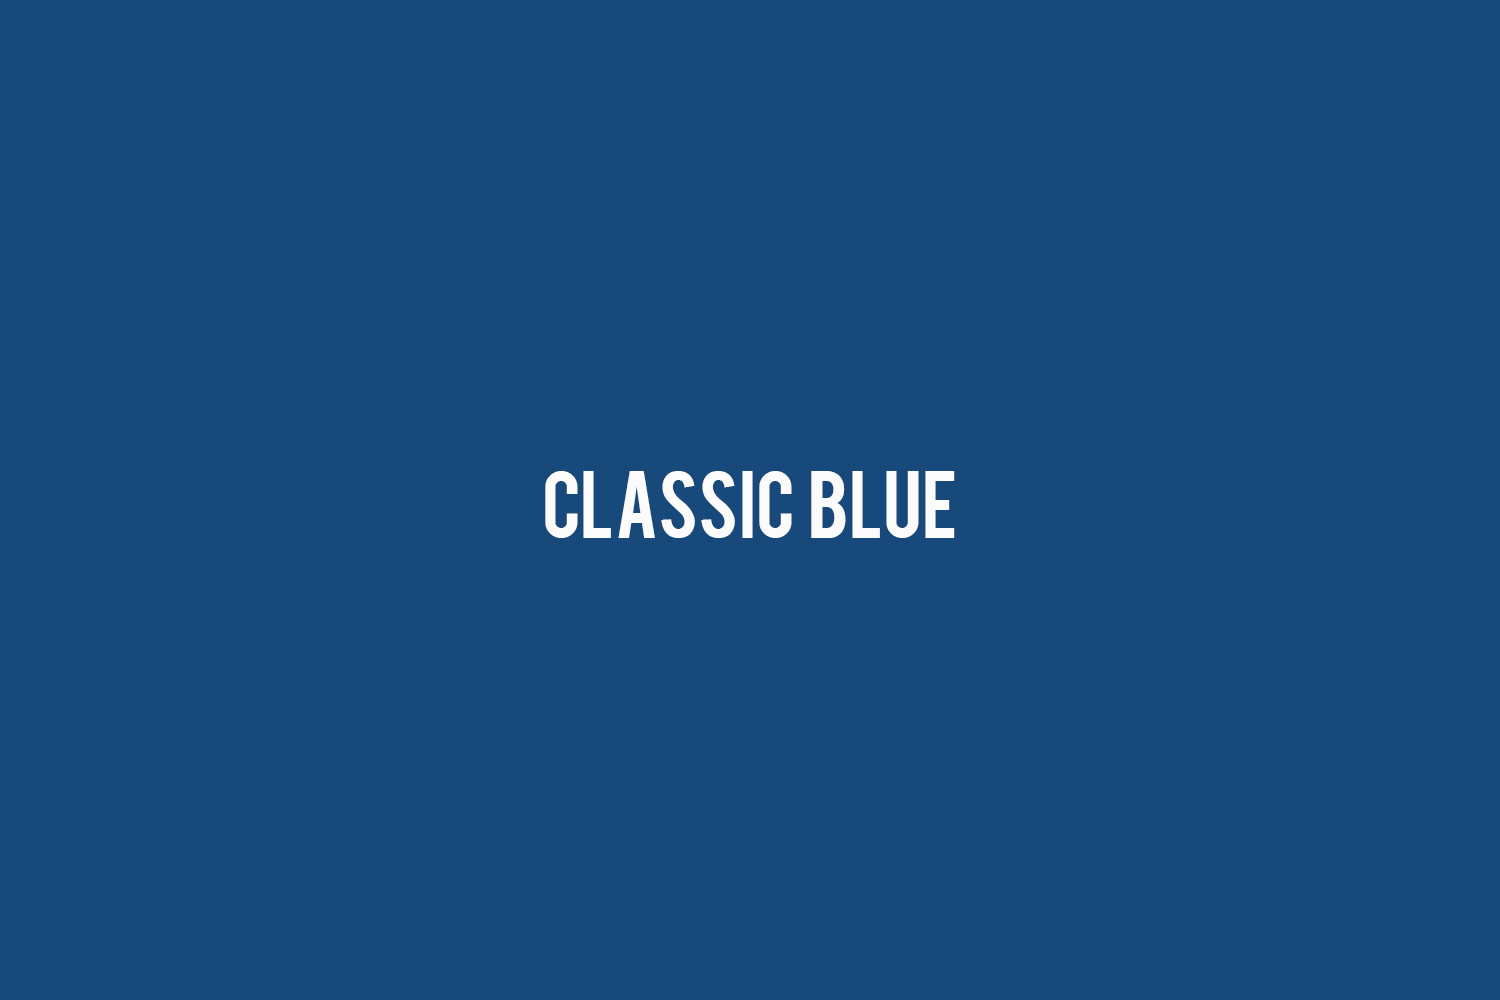 青 を効かせたメンズコーデ特集 イマ注目したいブルーはこの3種 メンズファッションメディア Brlbrl 男前研究所